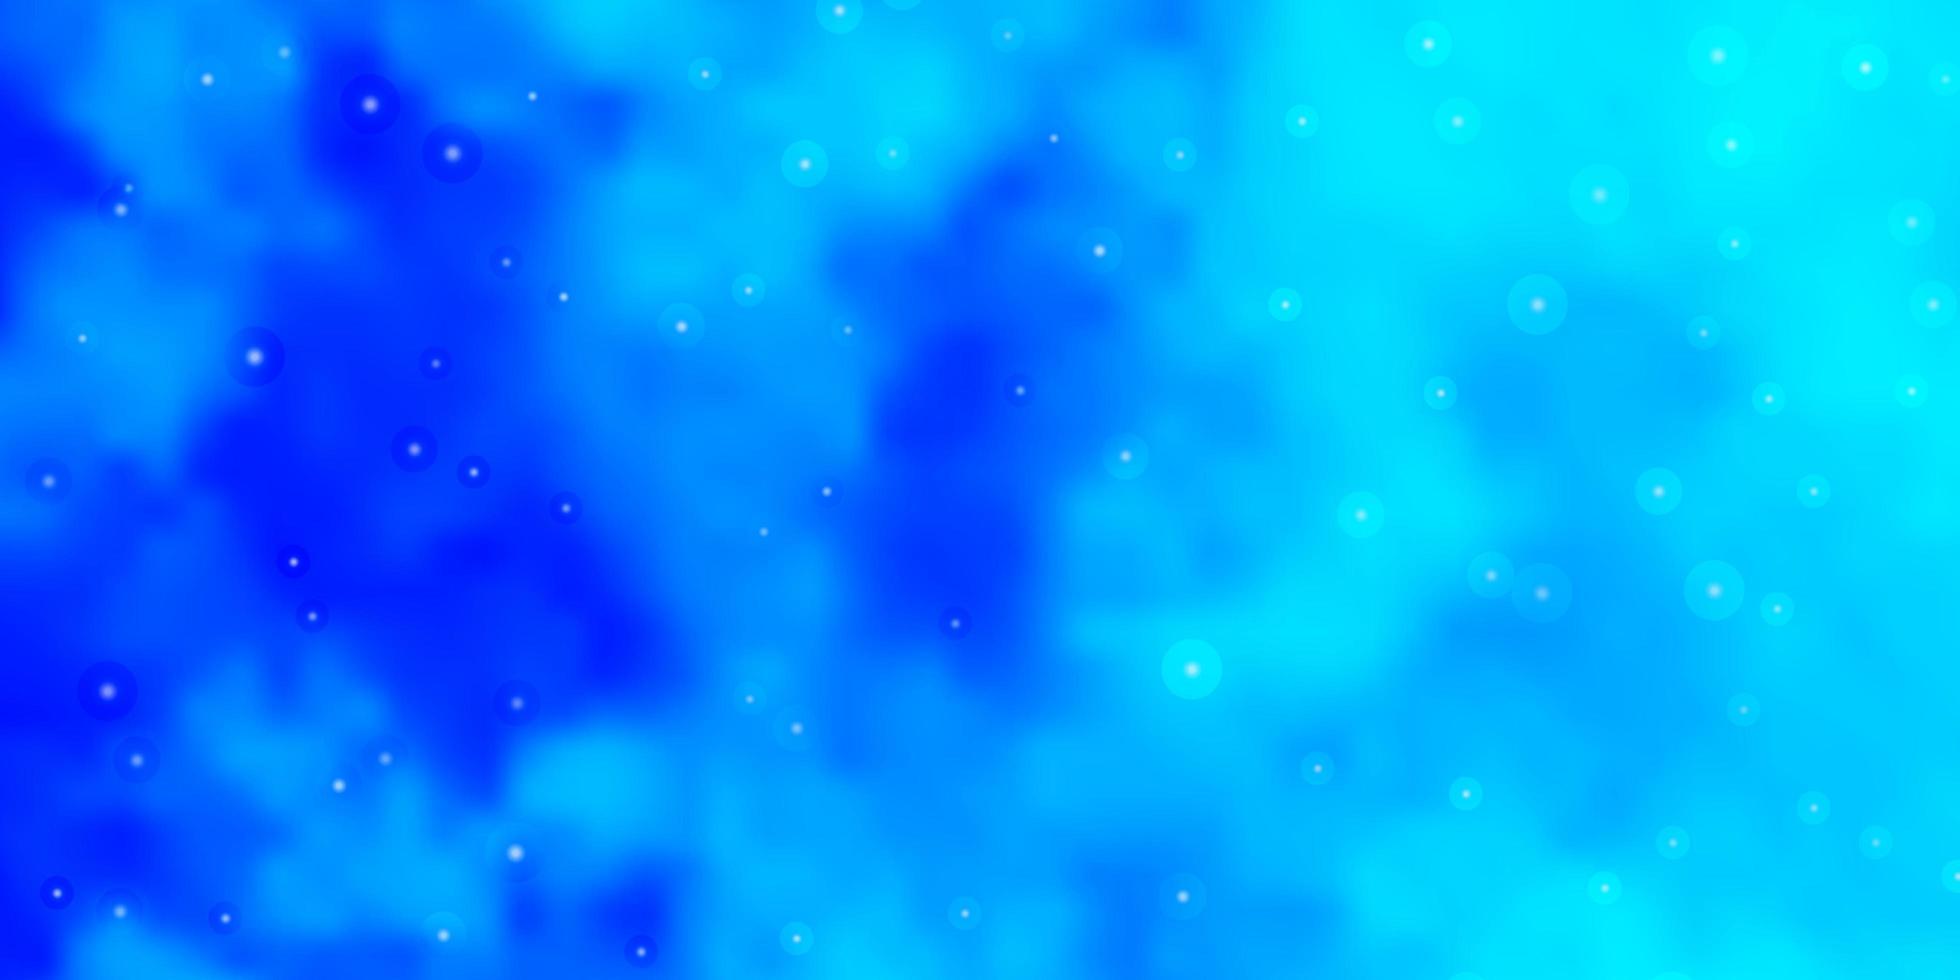 ljusblå vektormall med neonstjärnor vektor